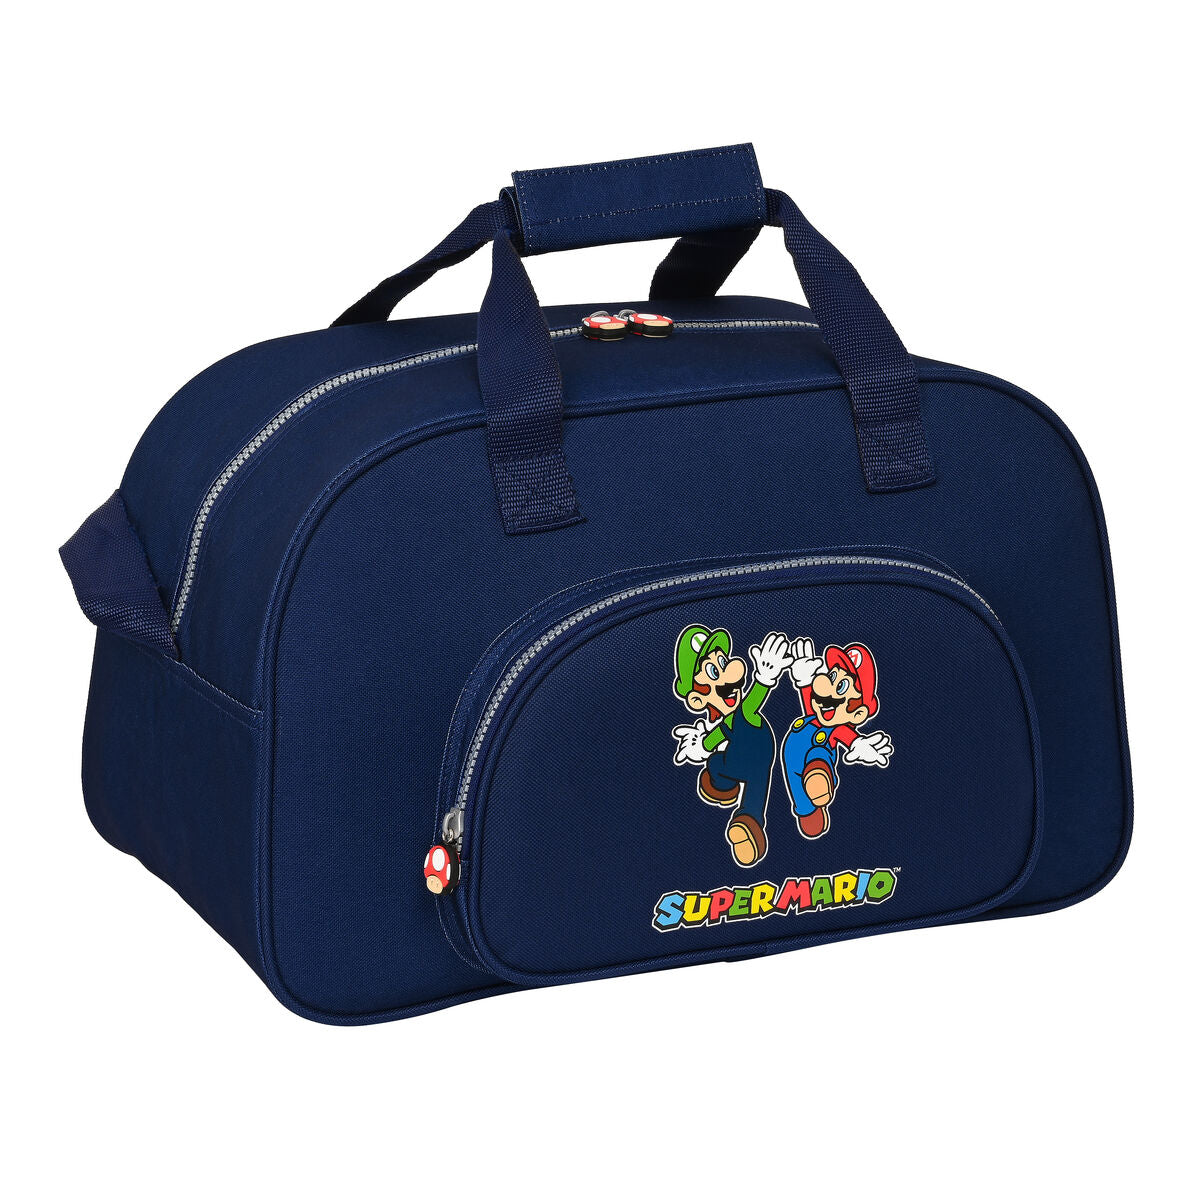 Bolsa de Deporte Super Mario 40 x 24 x 23 cm Azul marino